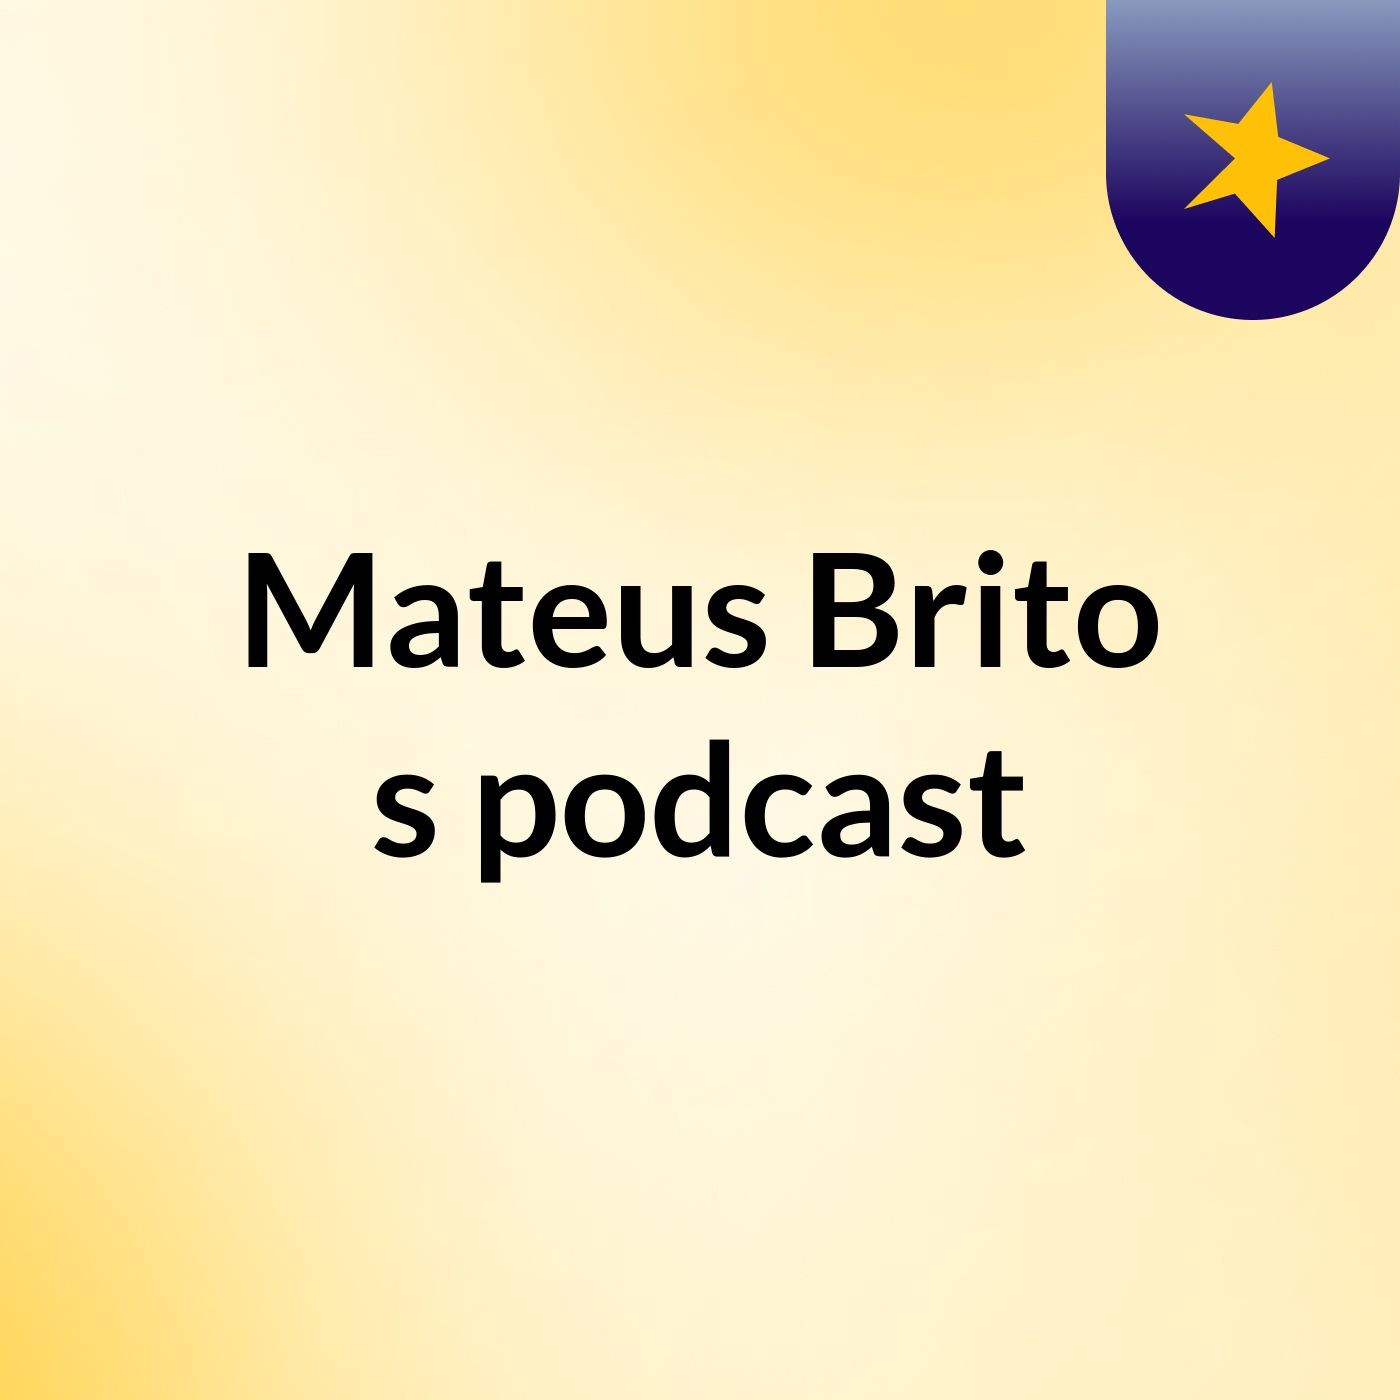 Mateus Brito's podcast